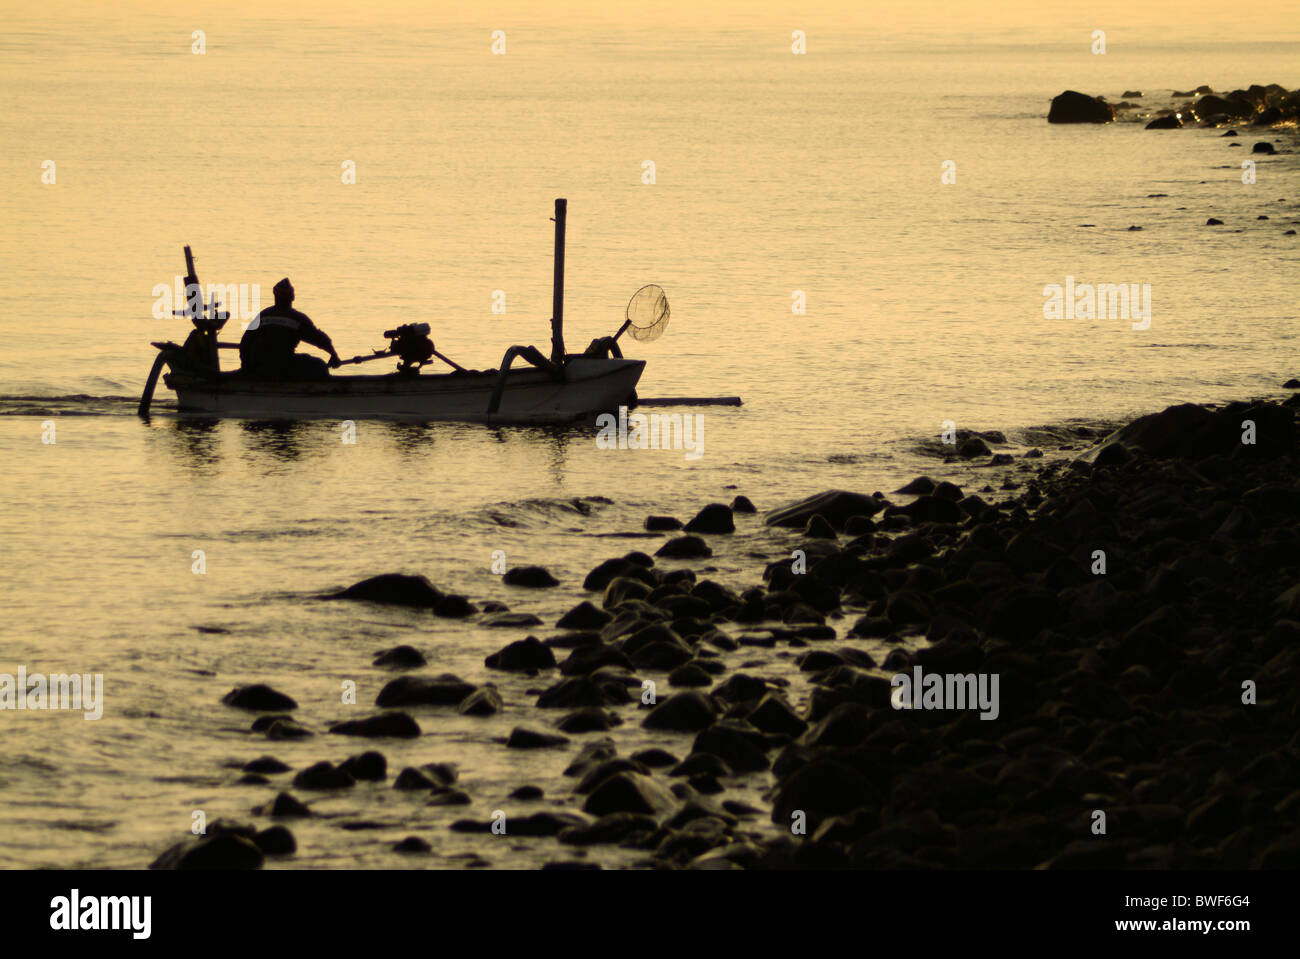 Im Dorf Tejakula, Bali, die Fischer kommen ans Ufer bei Sonnenaufgang, ihren Fang entladen. Familie kommt mit der Arbeit zu helfen. Stockfoto